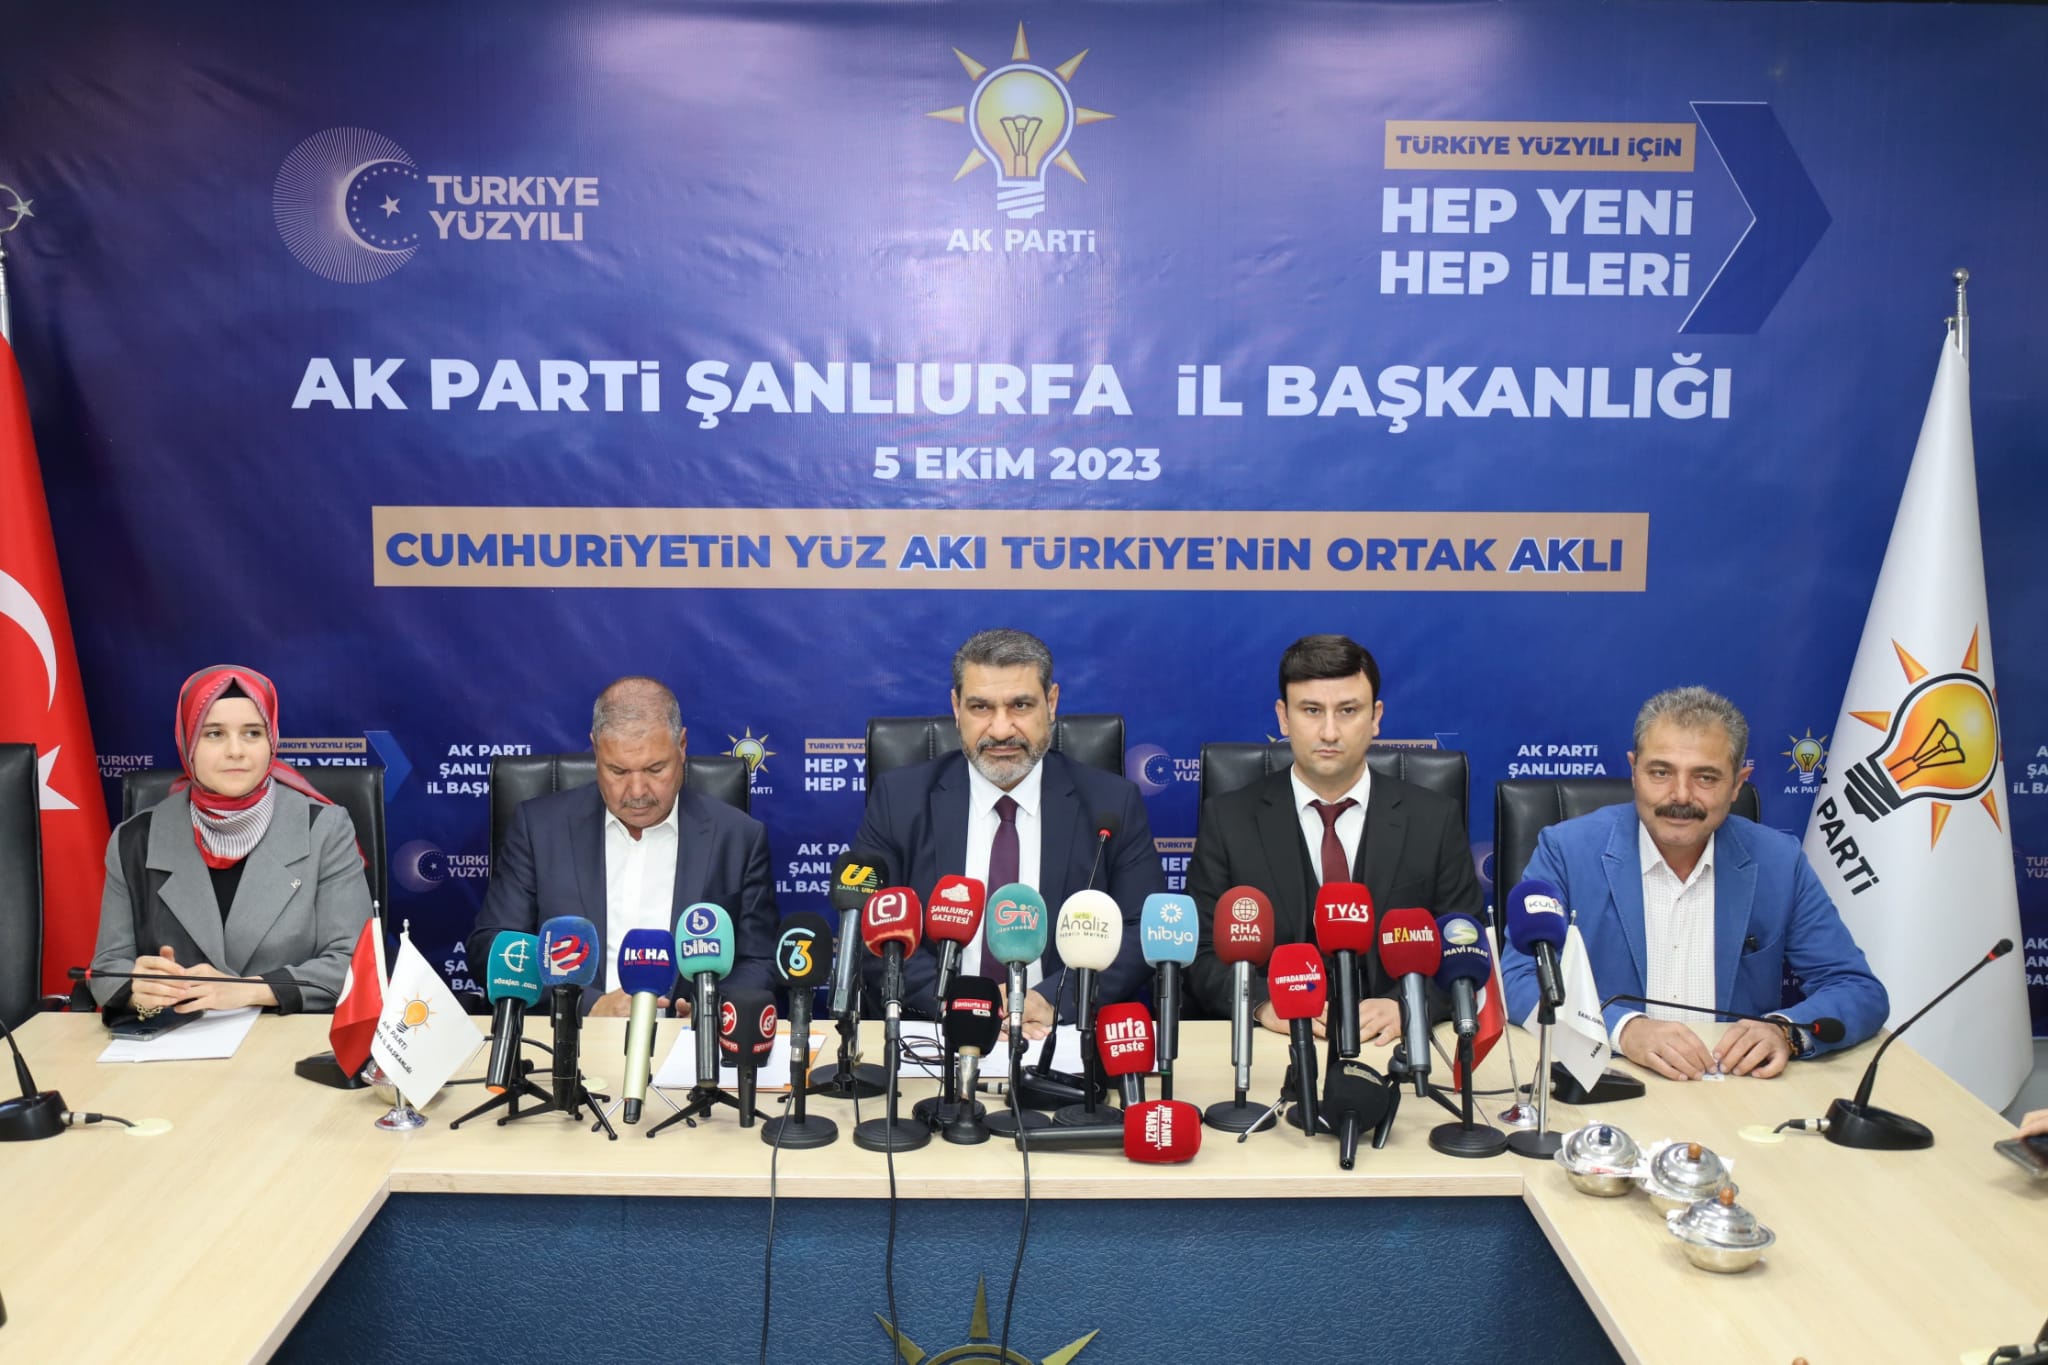 AK Parti Urfa’dan Olağanüstü Büyük Kongre öncesi basın açıklaması